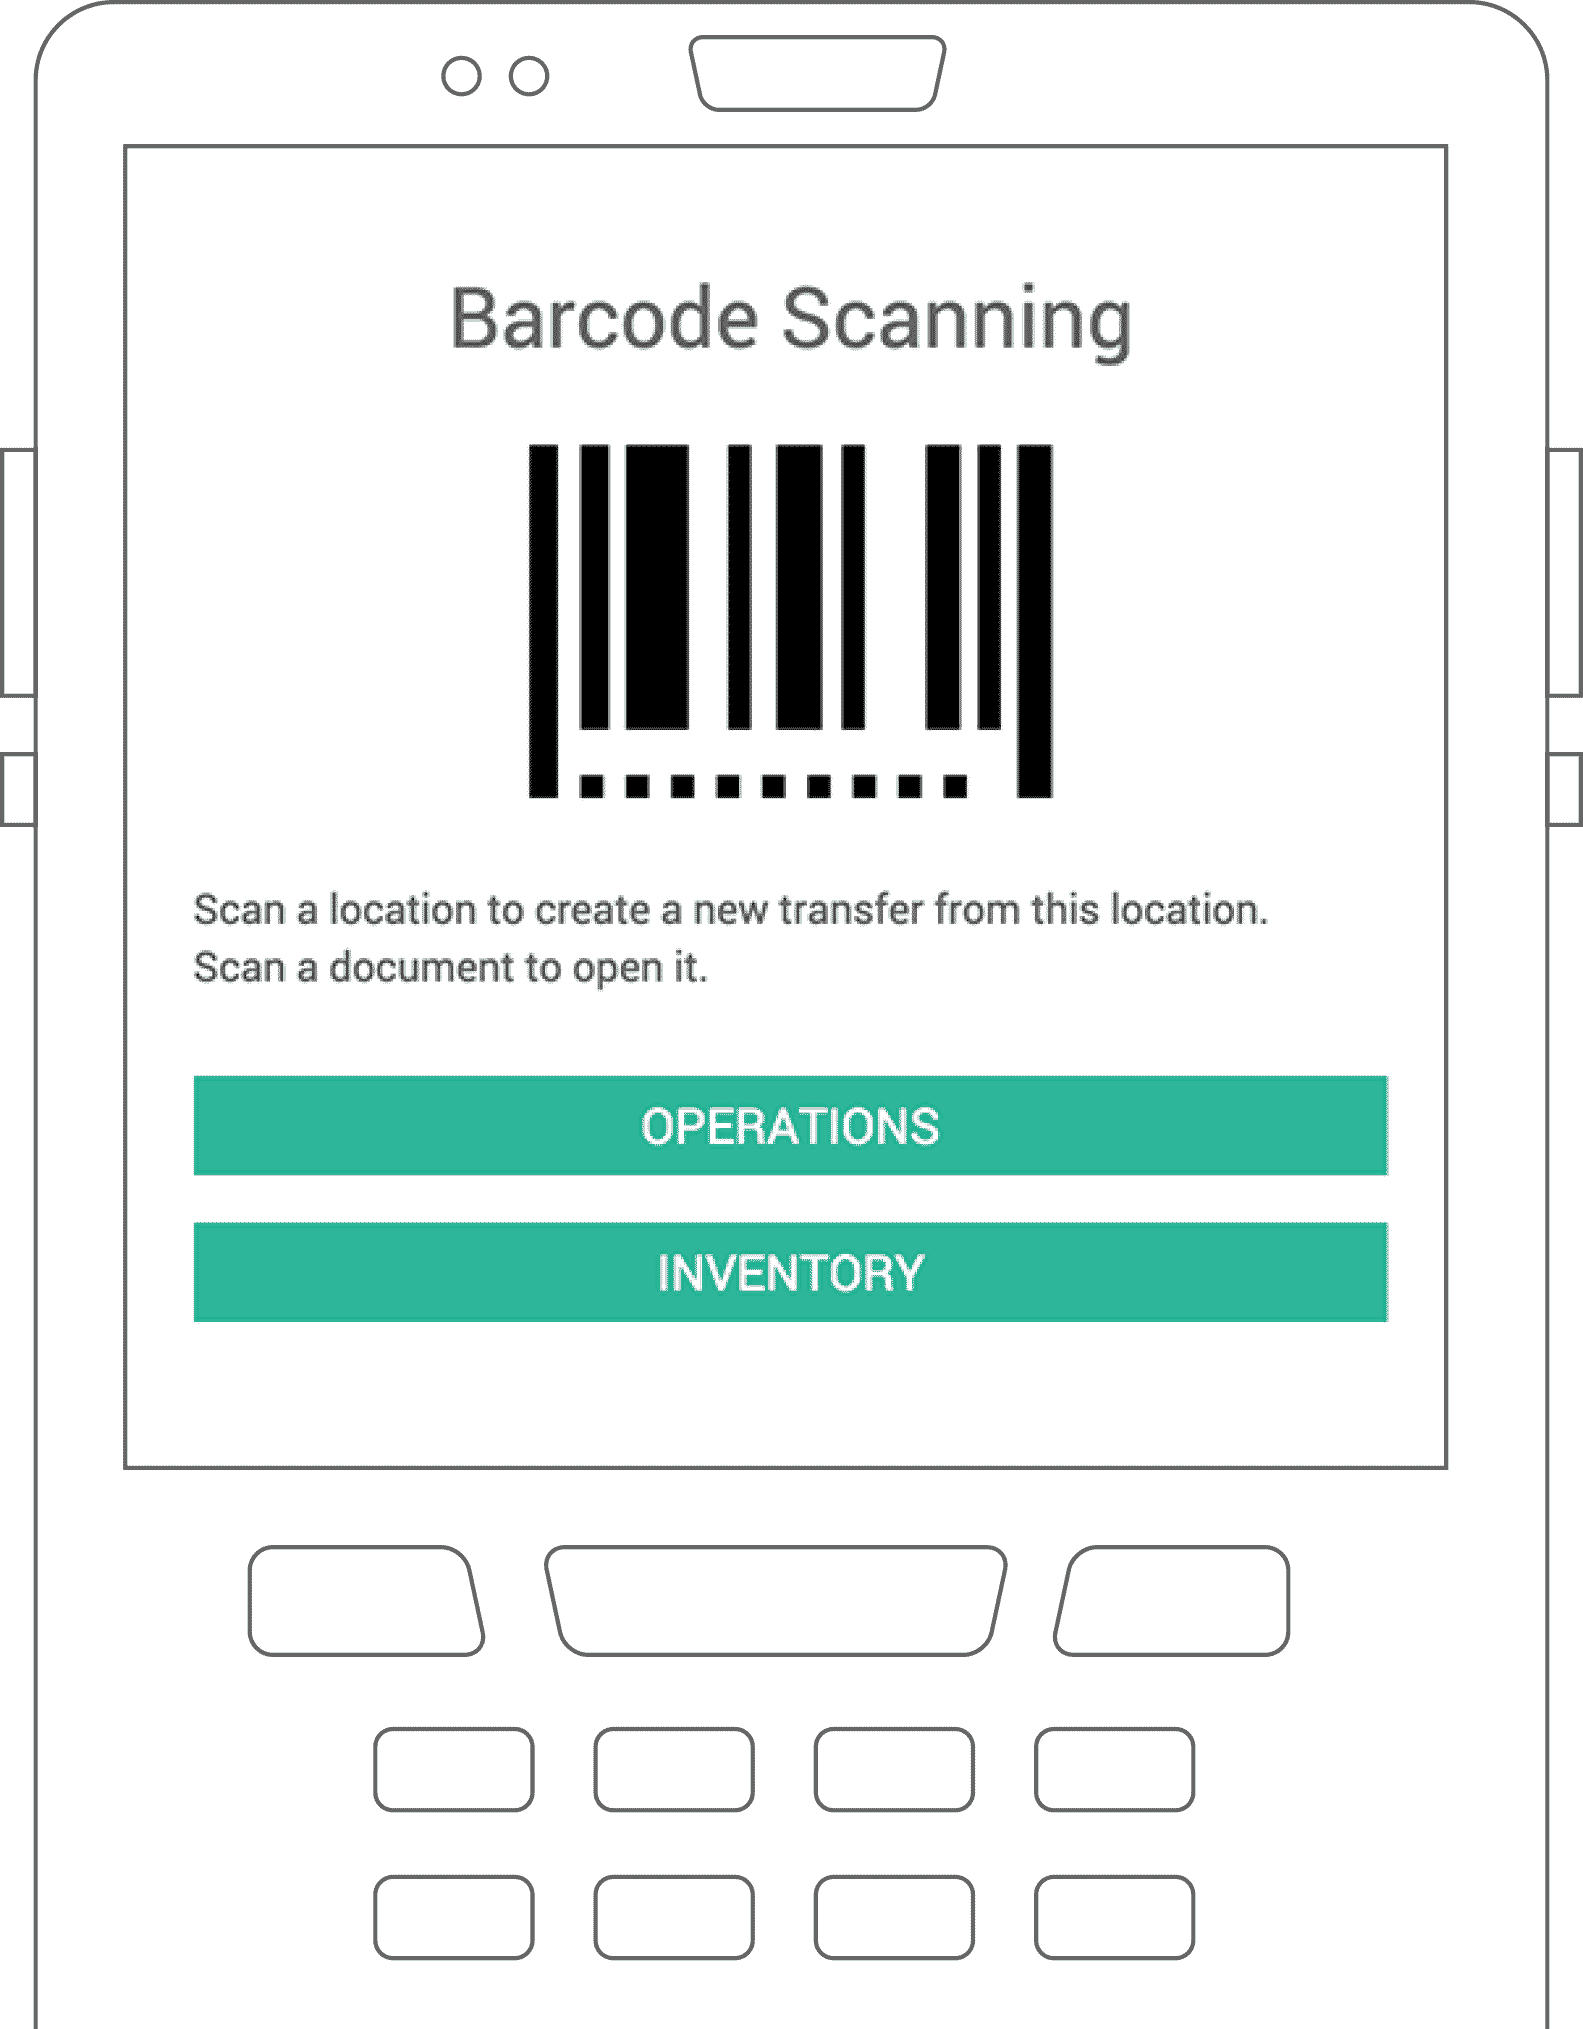 A barcode scanner /estoreworks